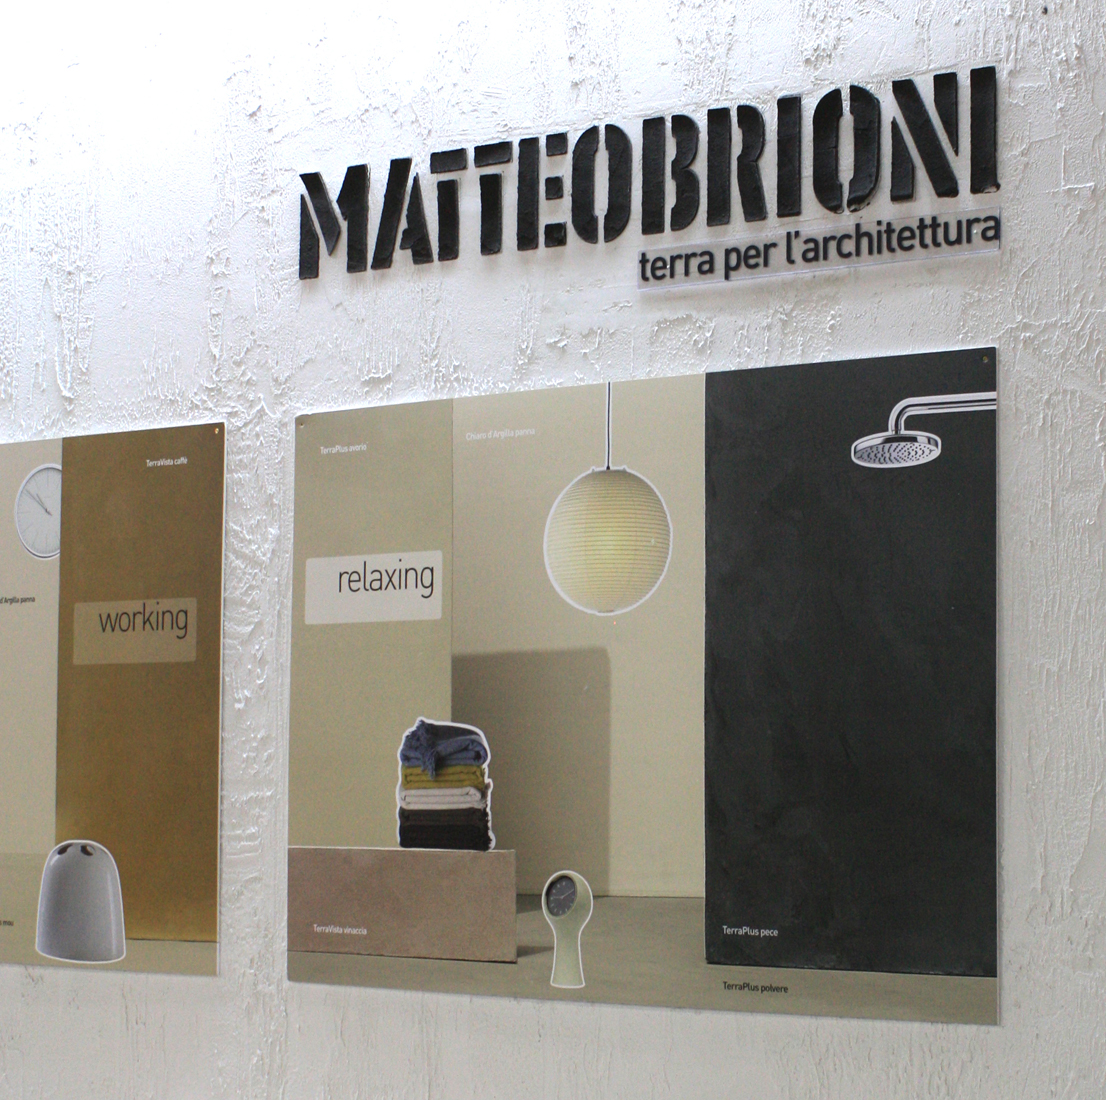 Metteo Brioni, design di Studio Irvine, Bolzano, 2014.